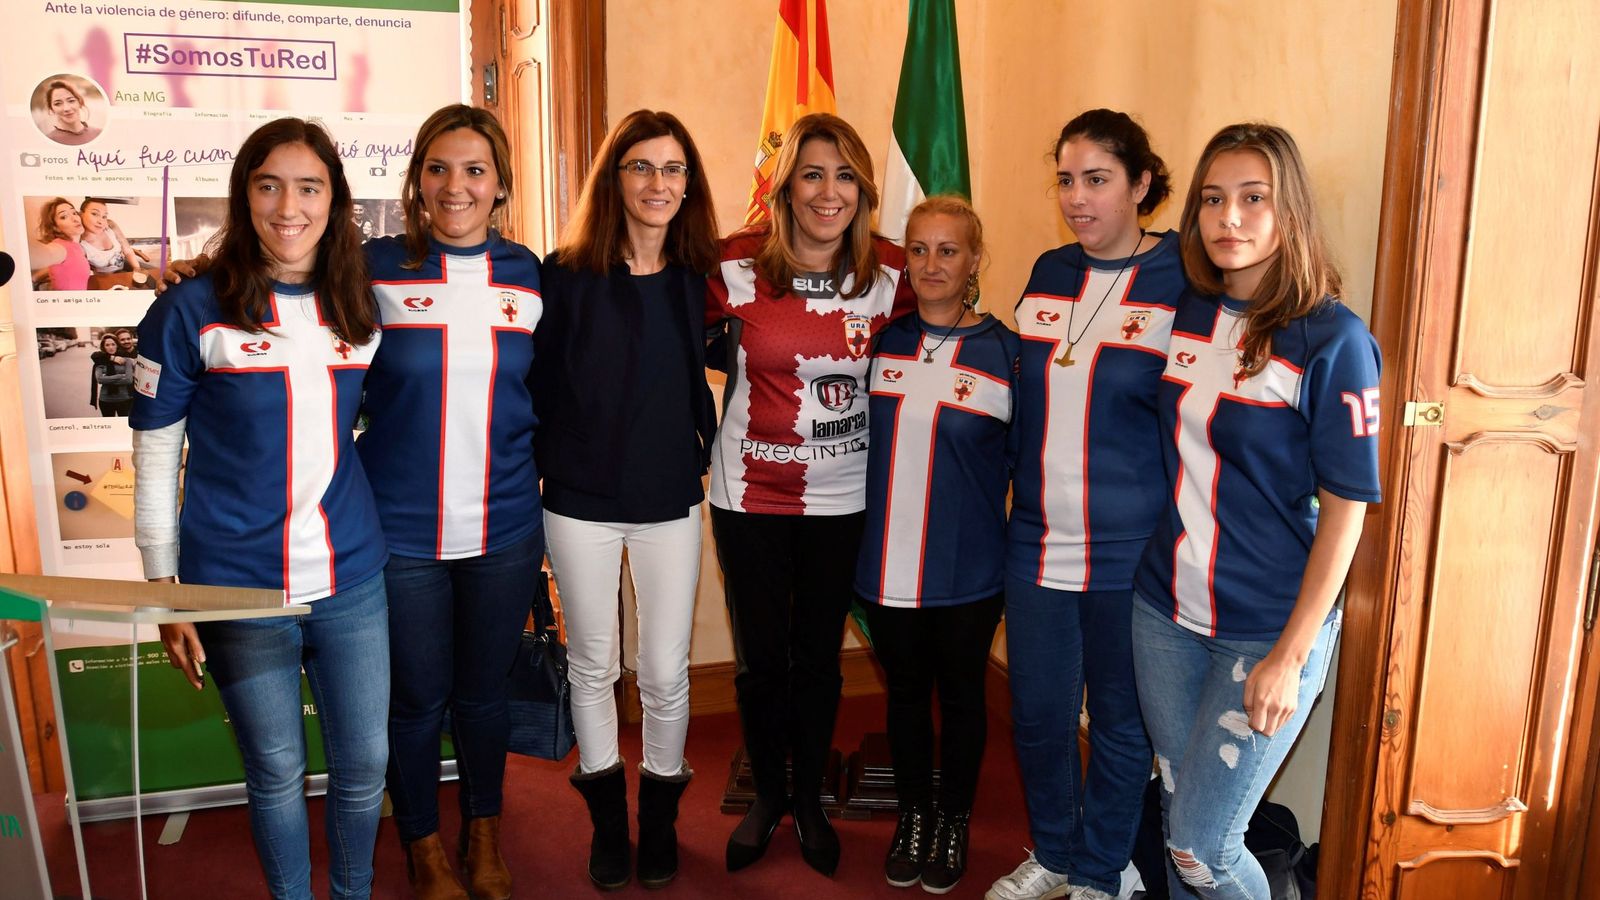 El equipo de rugby femenino URA posa con su camiseta en el día mundial contra la violencia de género. (EFE/Carlos Barba)